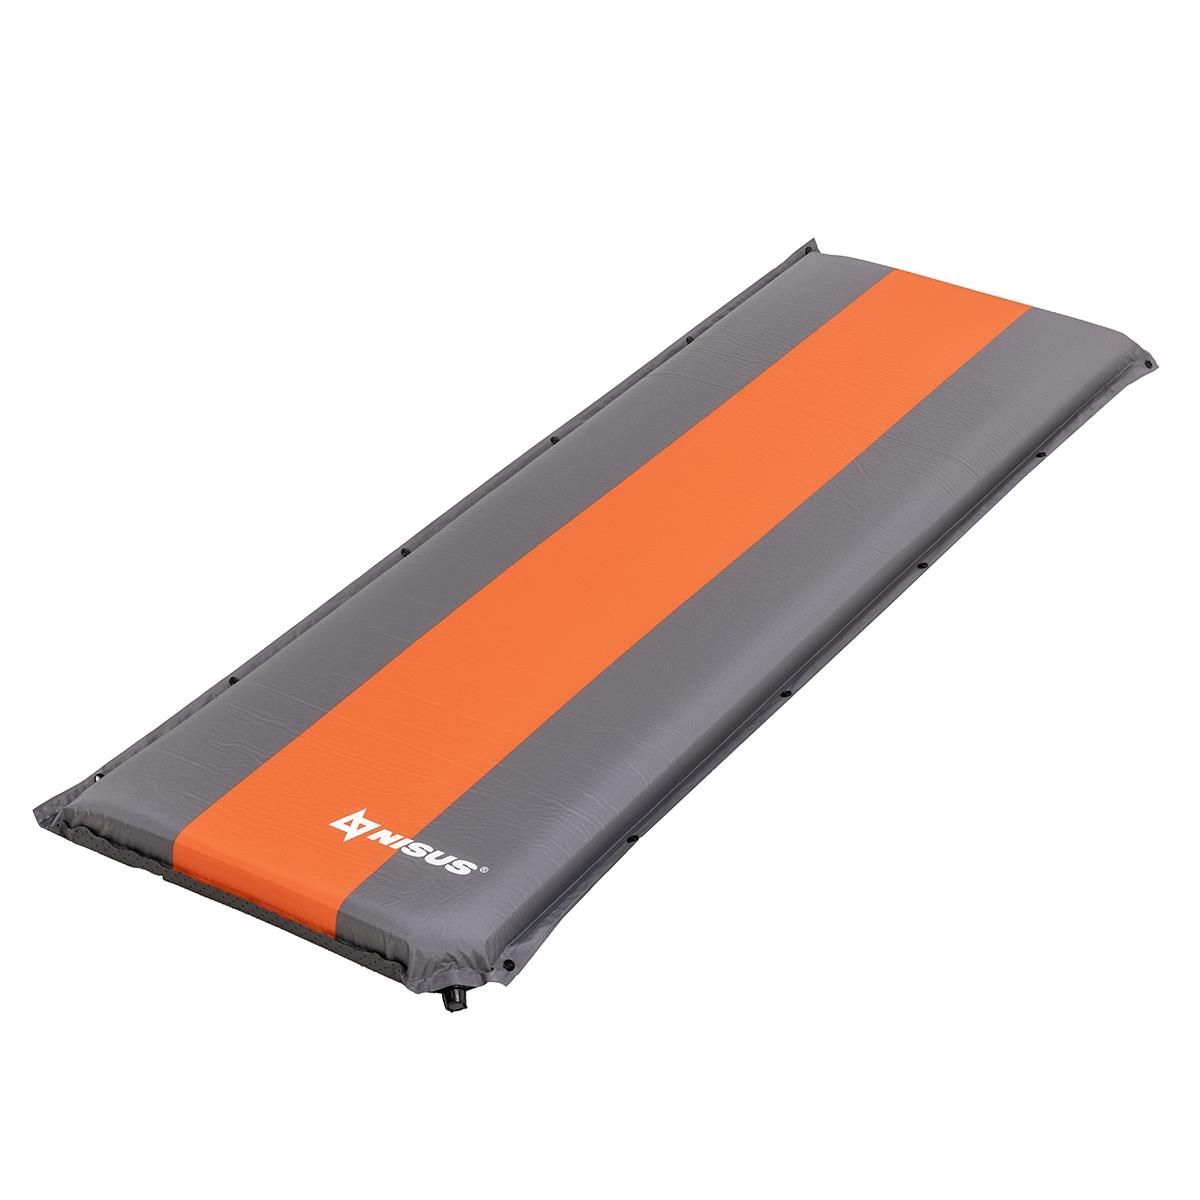 Коврик самонадув. 190x65x10 серый/оранжевый (N-010-GO) Nisus коврик для рукоделия двусторонний 28 х 43 см